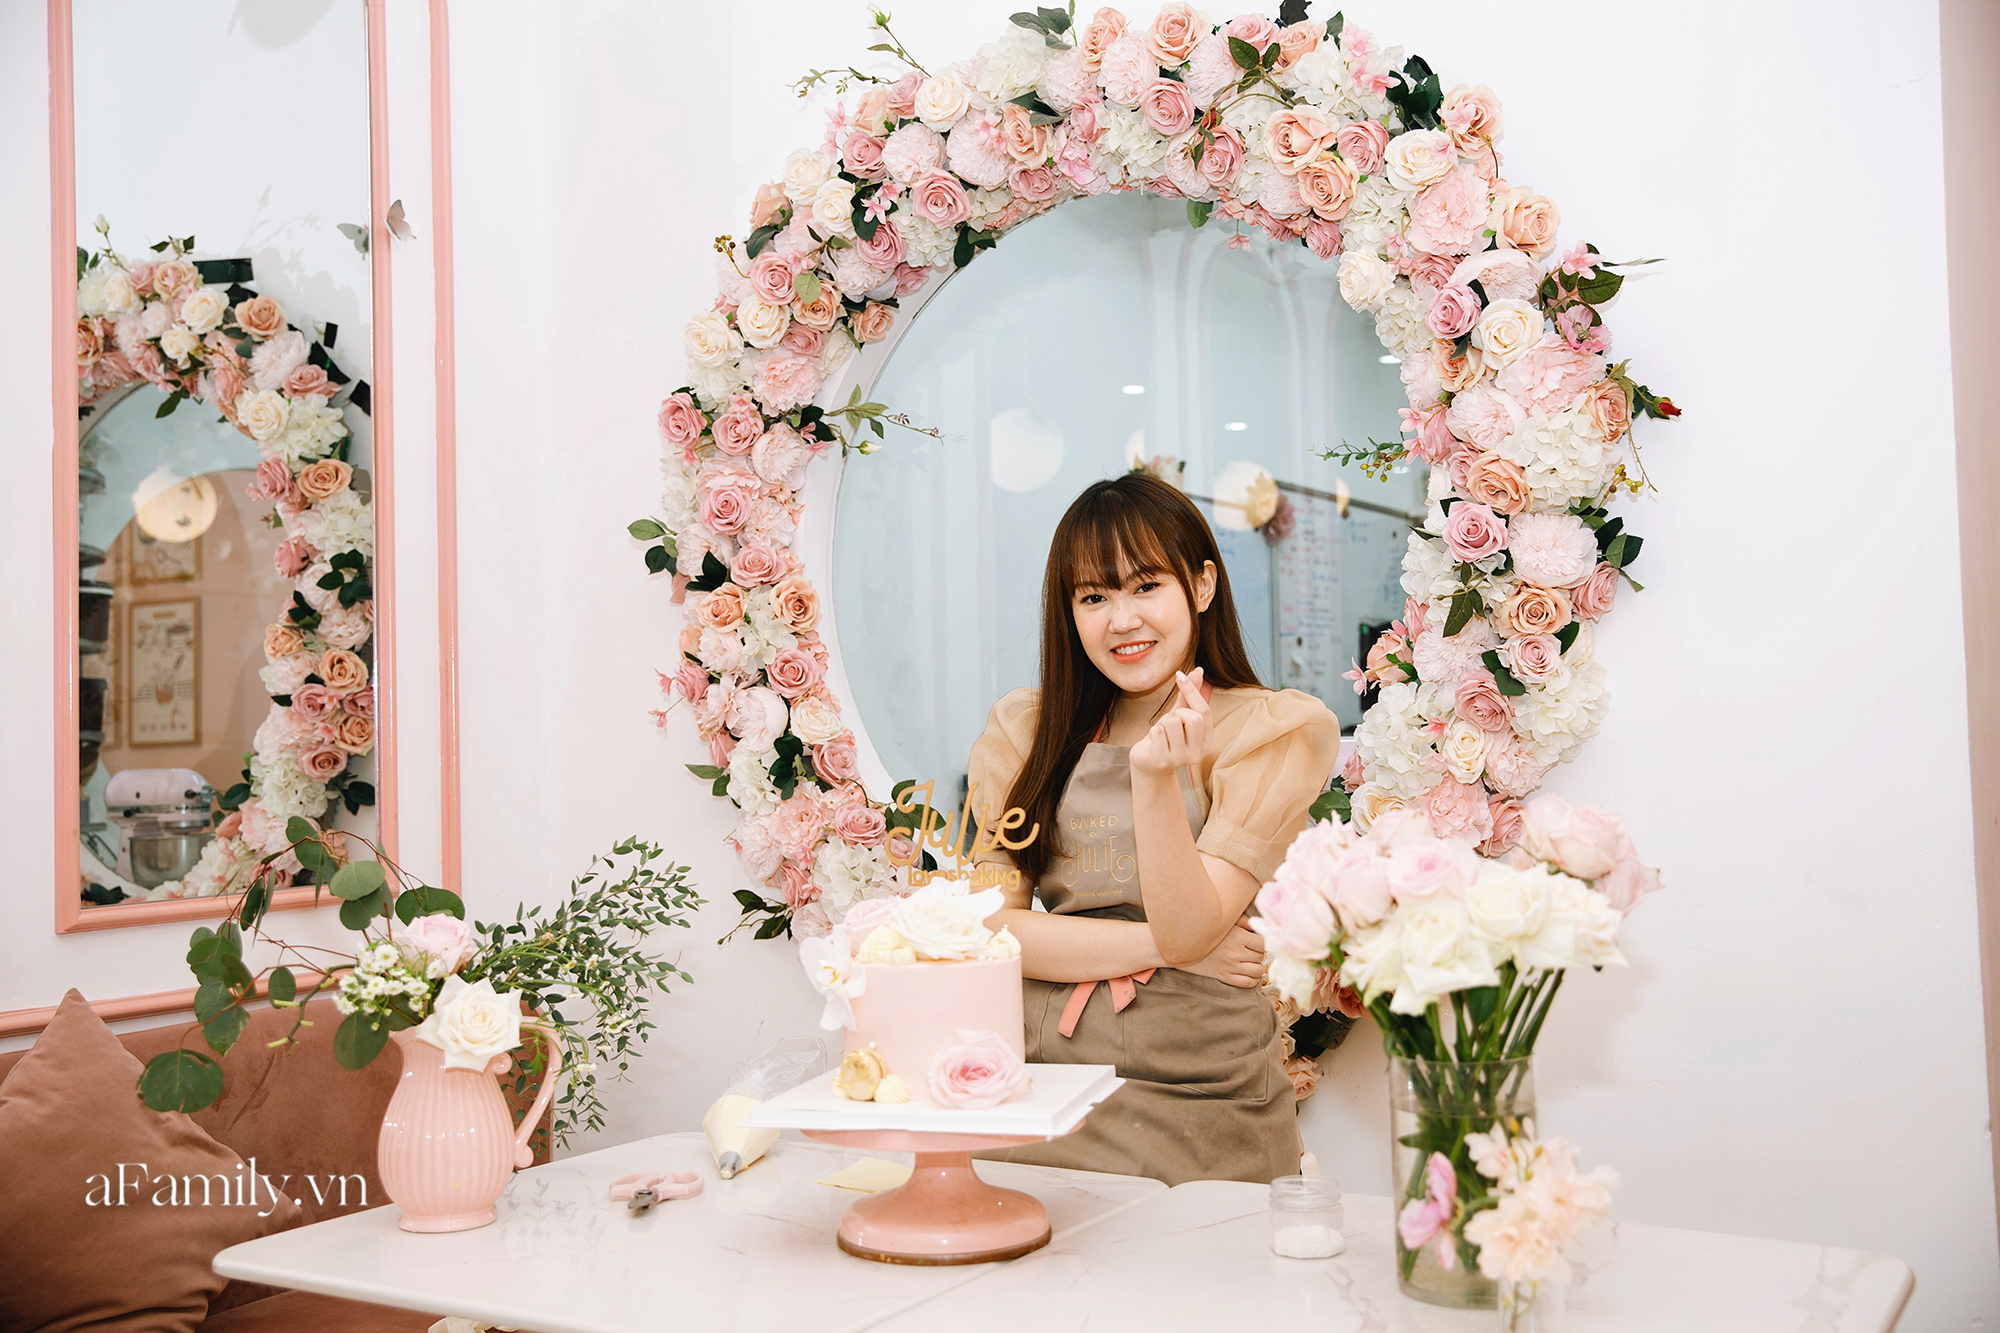 Julie Nguyễn - Cử nhân ở Anh với cú rẽ làm thợ bánh tại Hà Nội, 28 tuổi sở hữu tiệm bánh ngọt đình đám mà Ngọc Trinh tuyên bố có bay hơn 1.500km cũng phải ghé ăn bằng được - Ảnh 11.